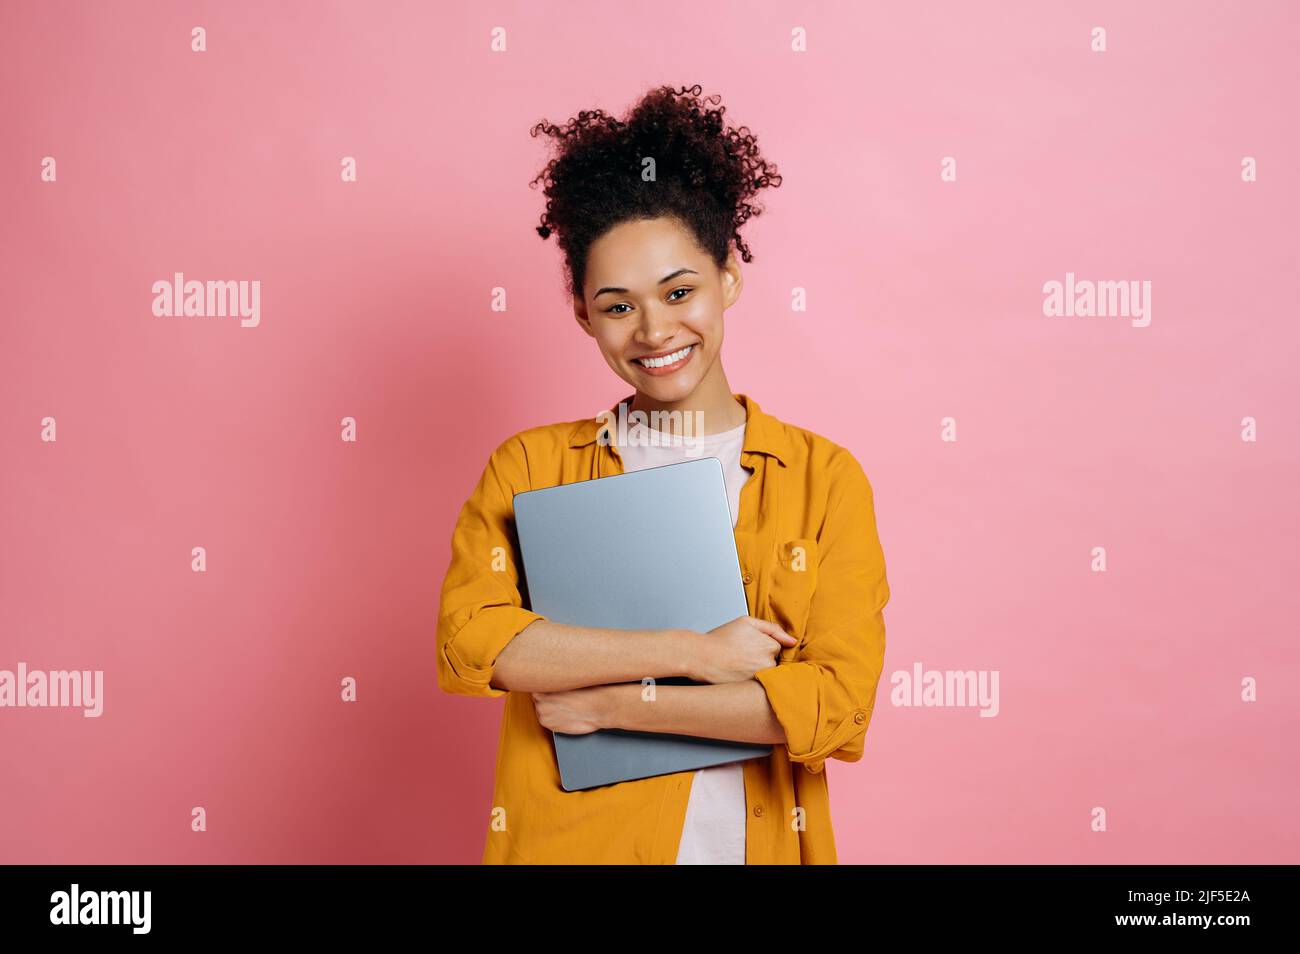 Schöne positive afroamerikanische junge Frau mit lockigem Haar, in lässiger, stilvoller Kleidung, mit Laptop, über einem isolierten rosa Hintergrund stehend, mit Blick auf die Kamera, freundlich lächelnd Stockfoto